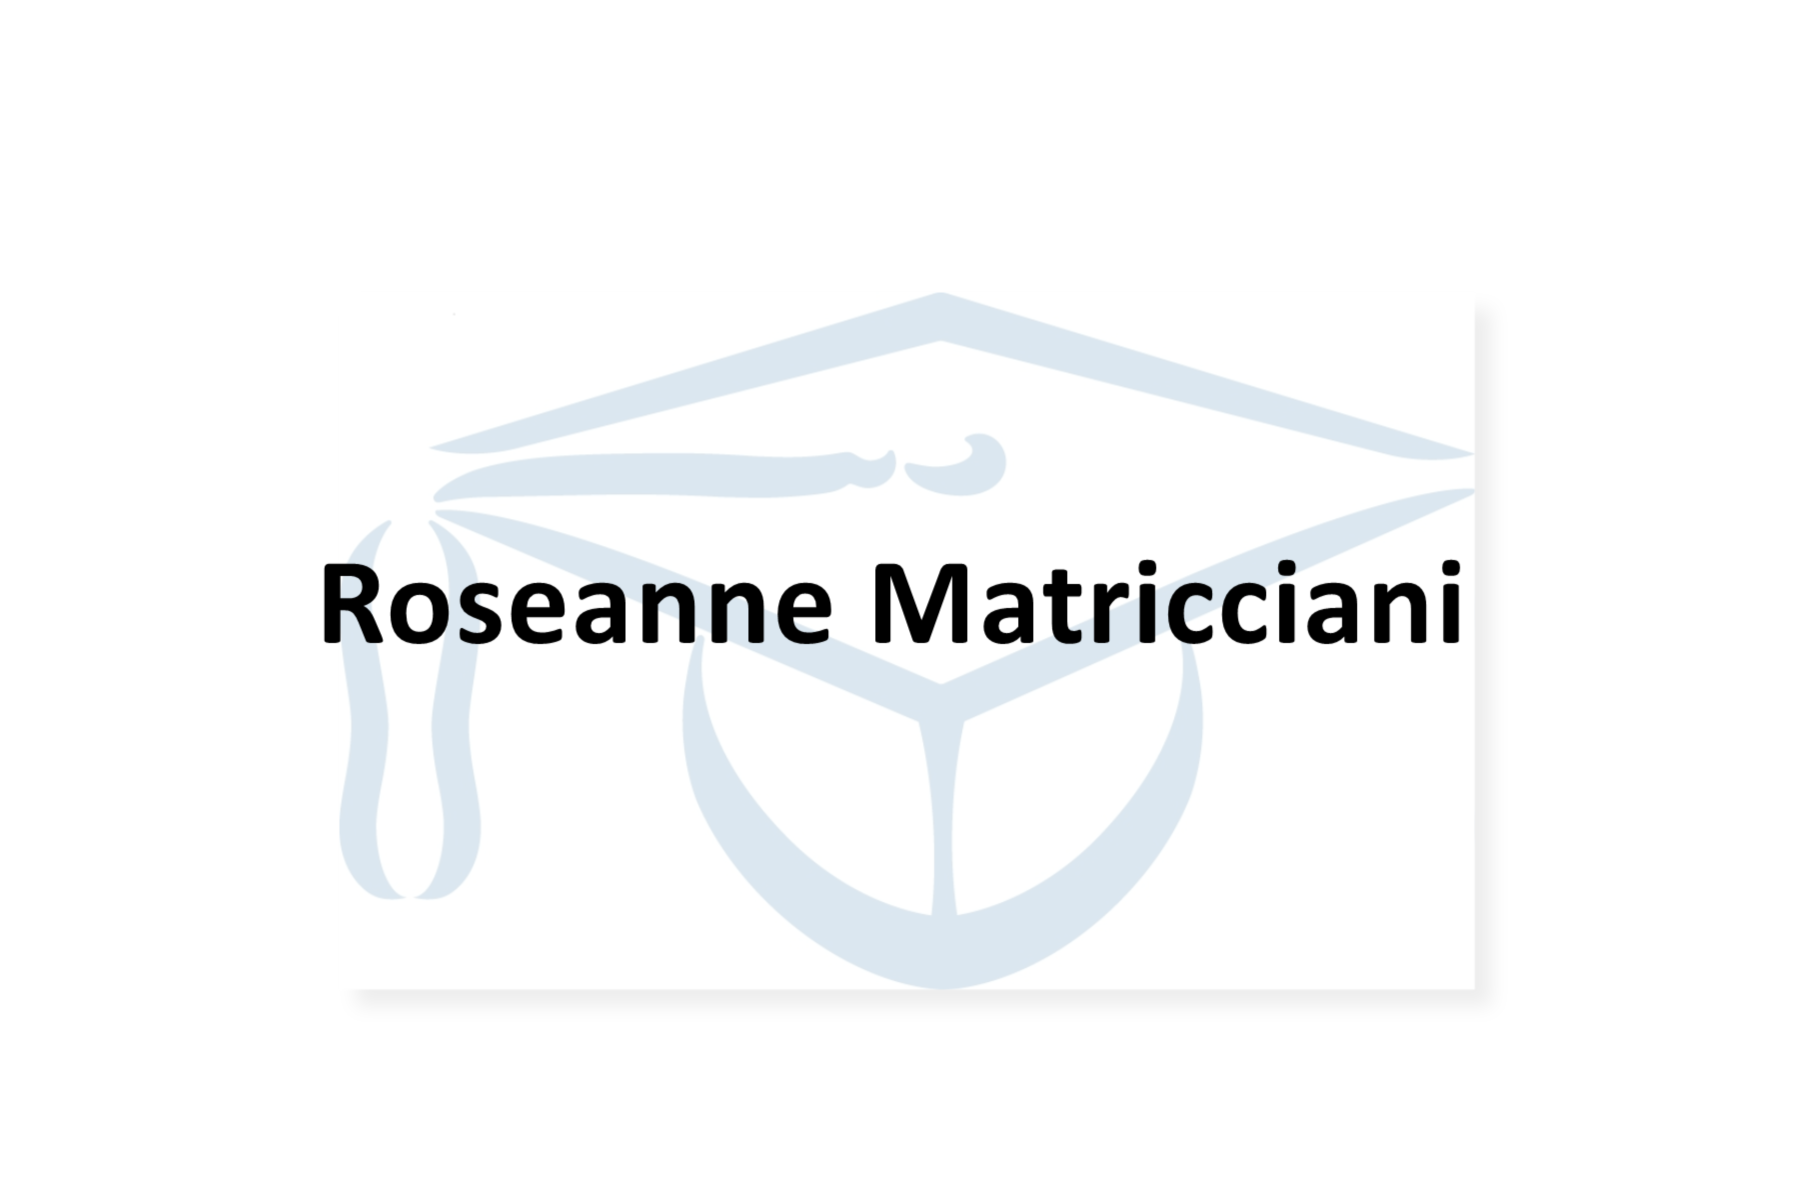 Roseanne Matricciani